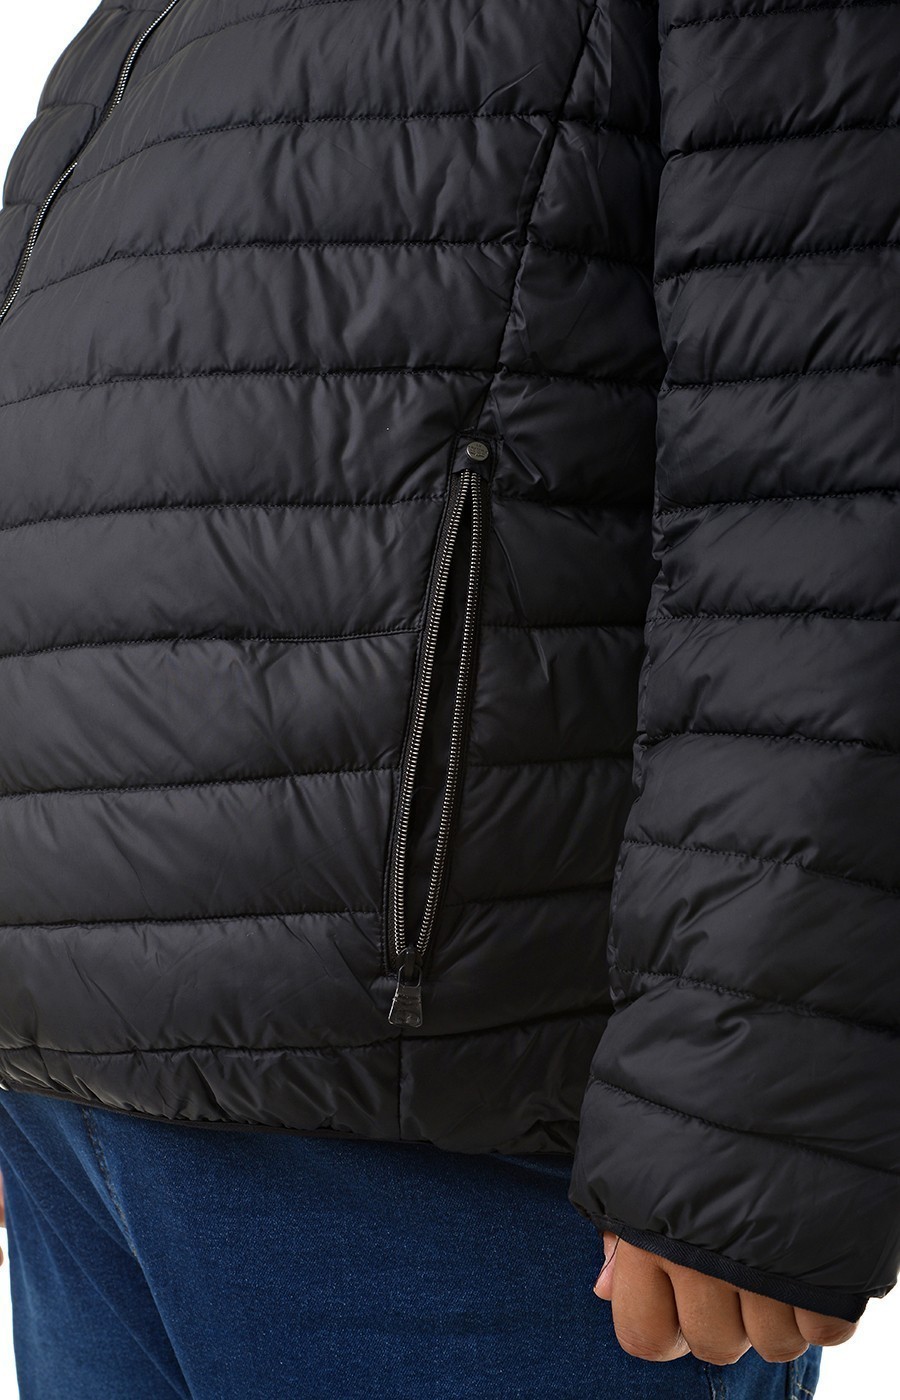 Куртка чёрная стеганая с капюшоном большого размера